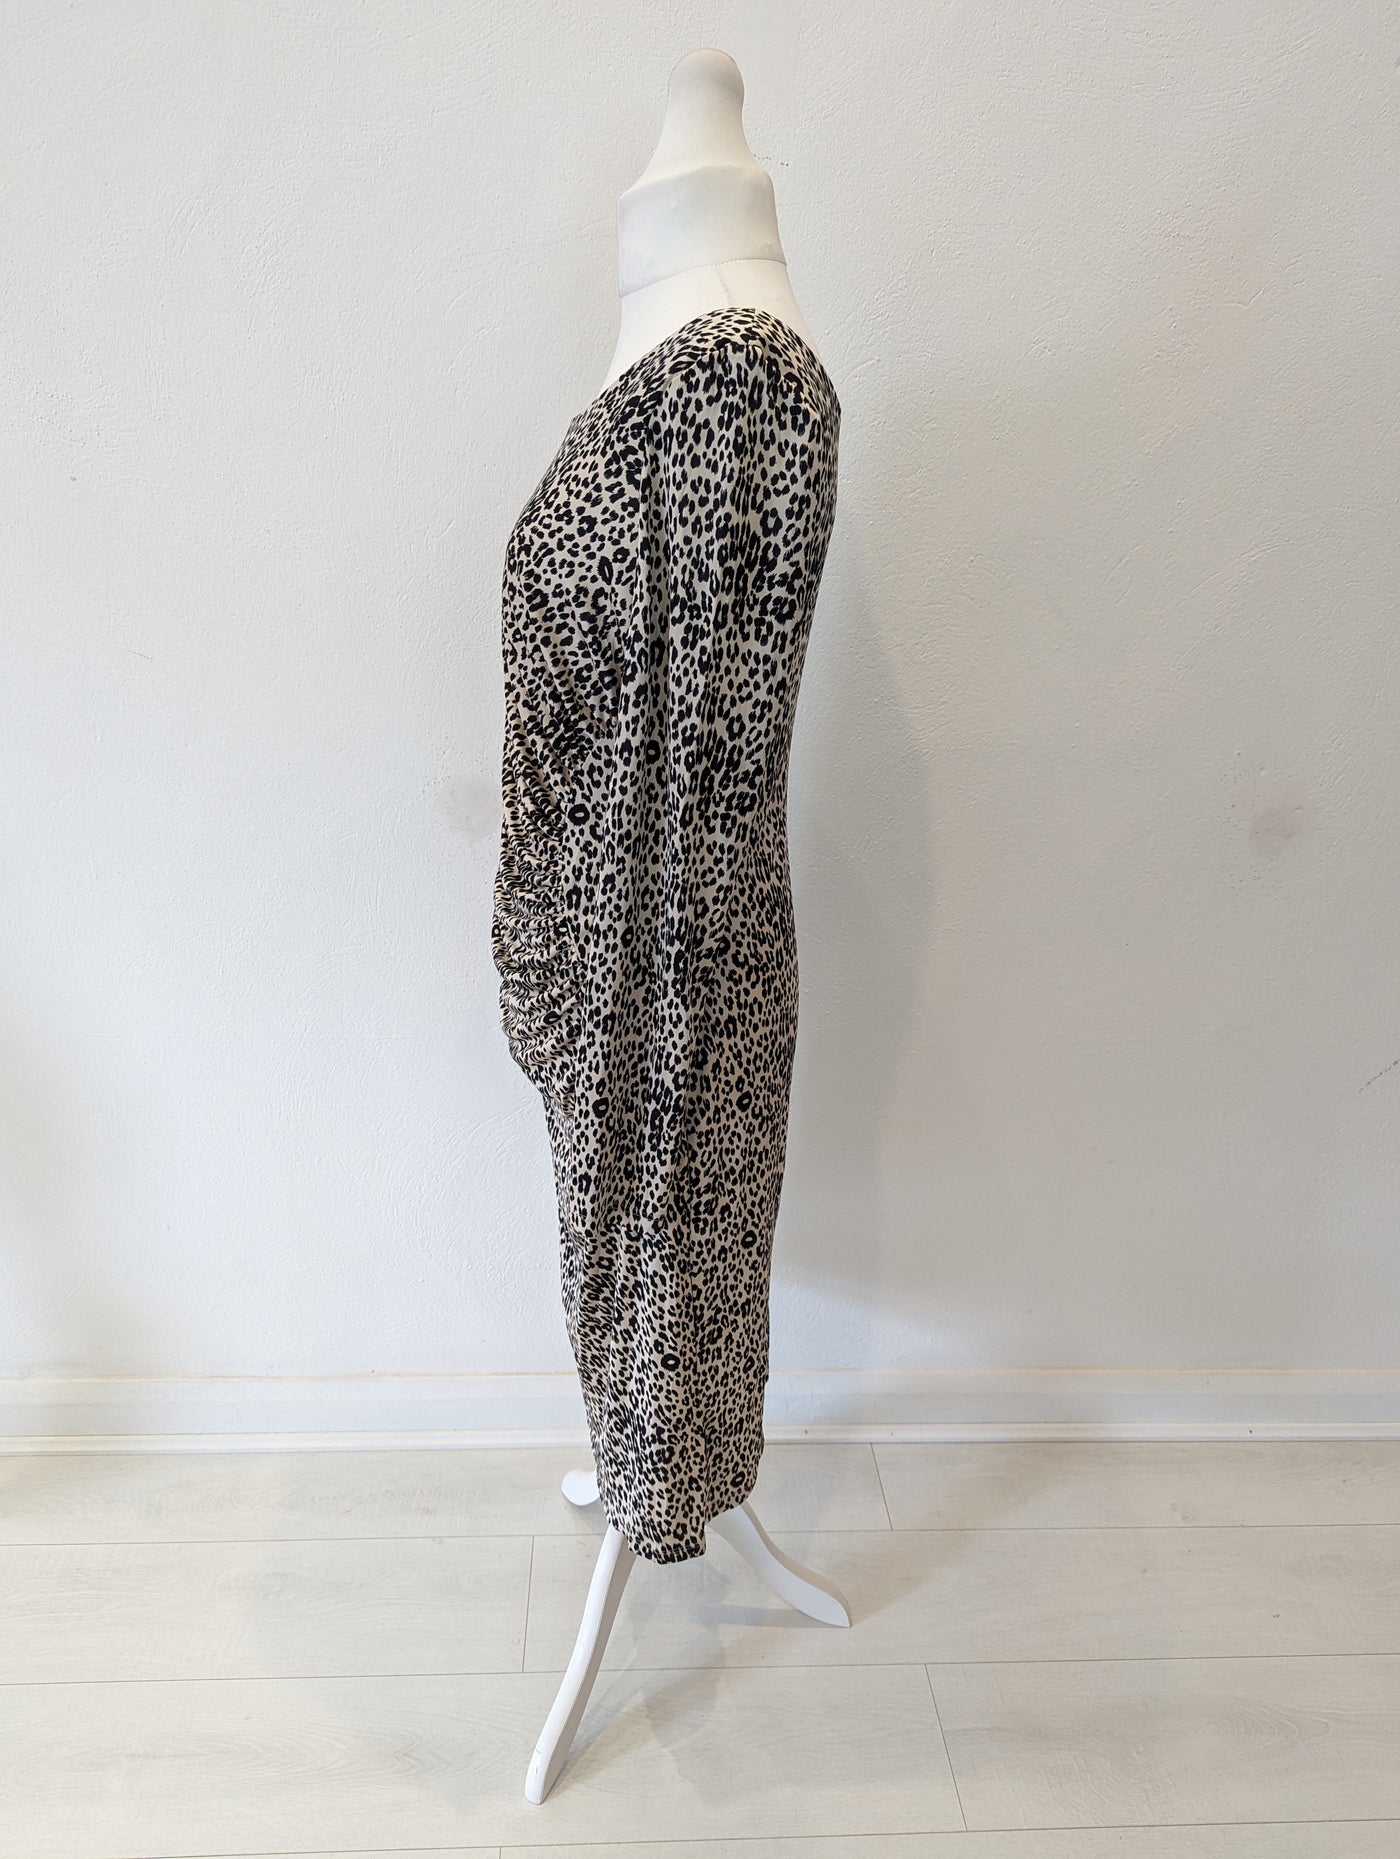 LK Bennett Leopard Ruched Silk dress 14